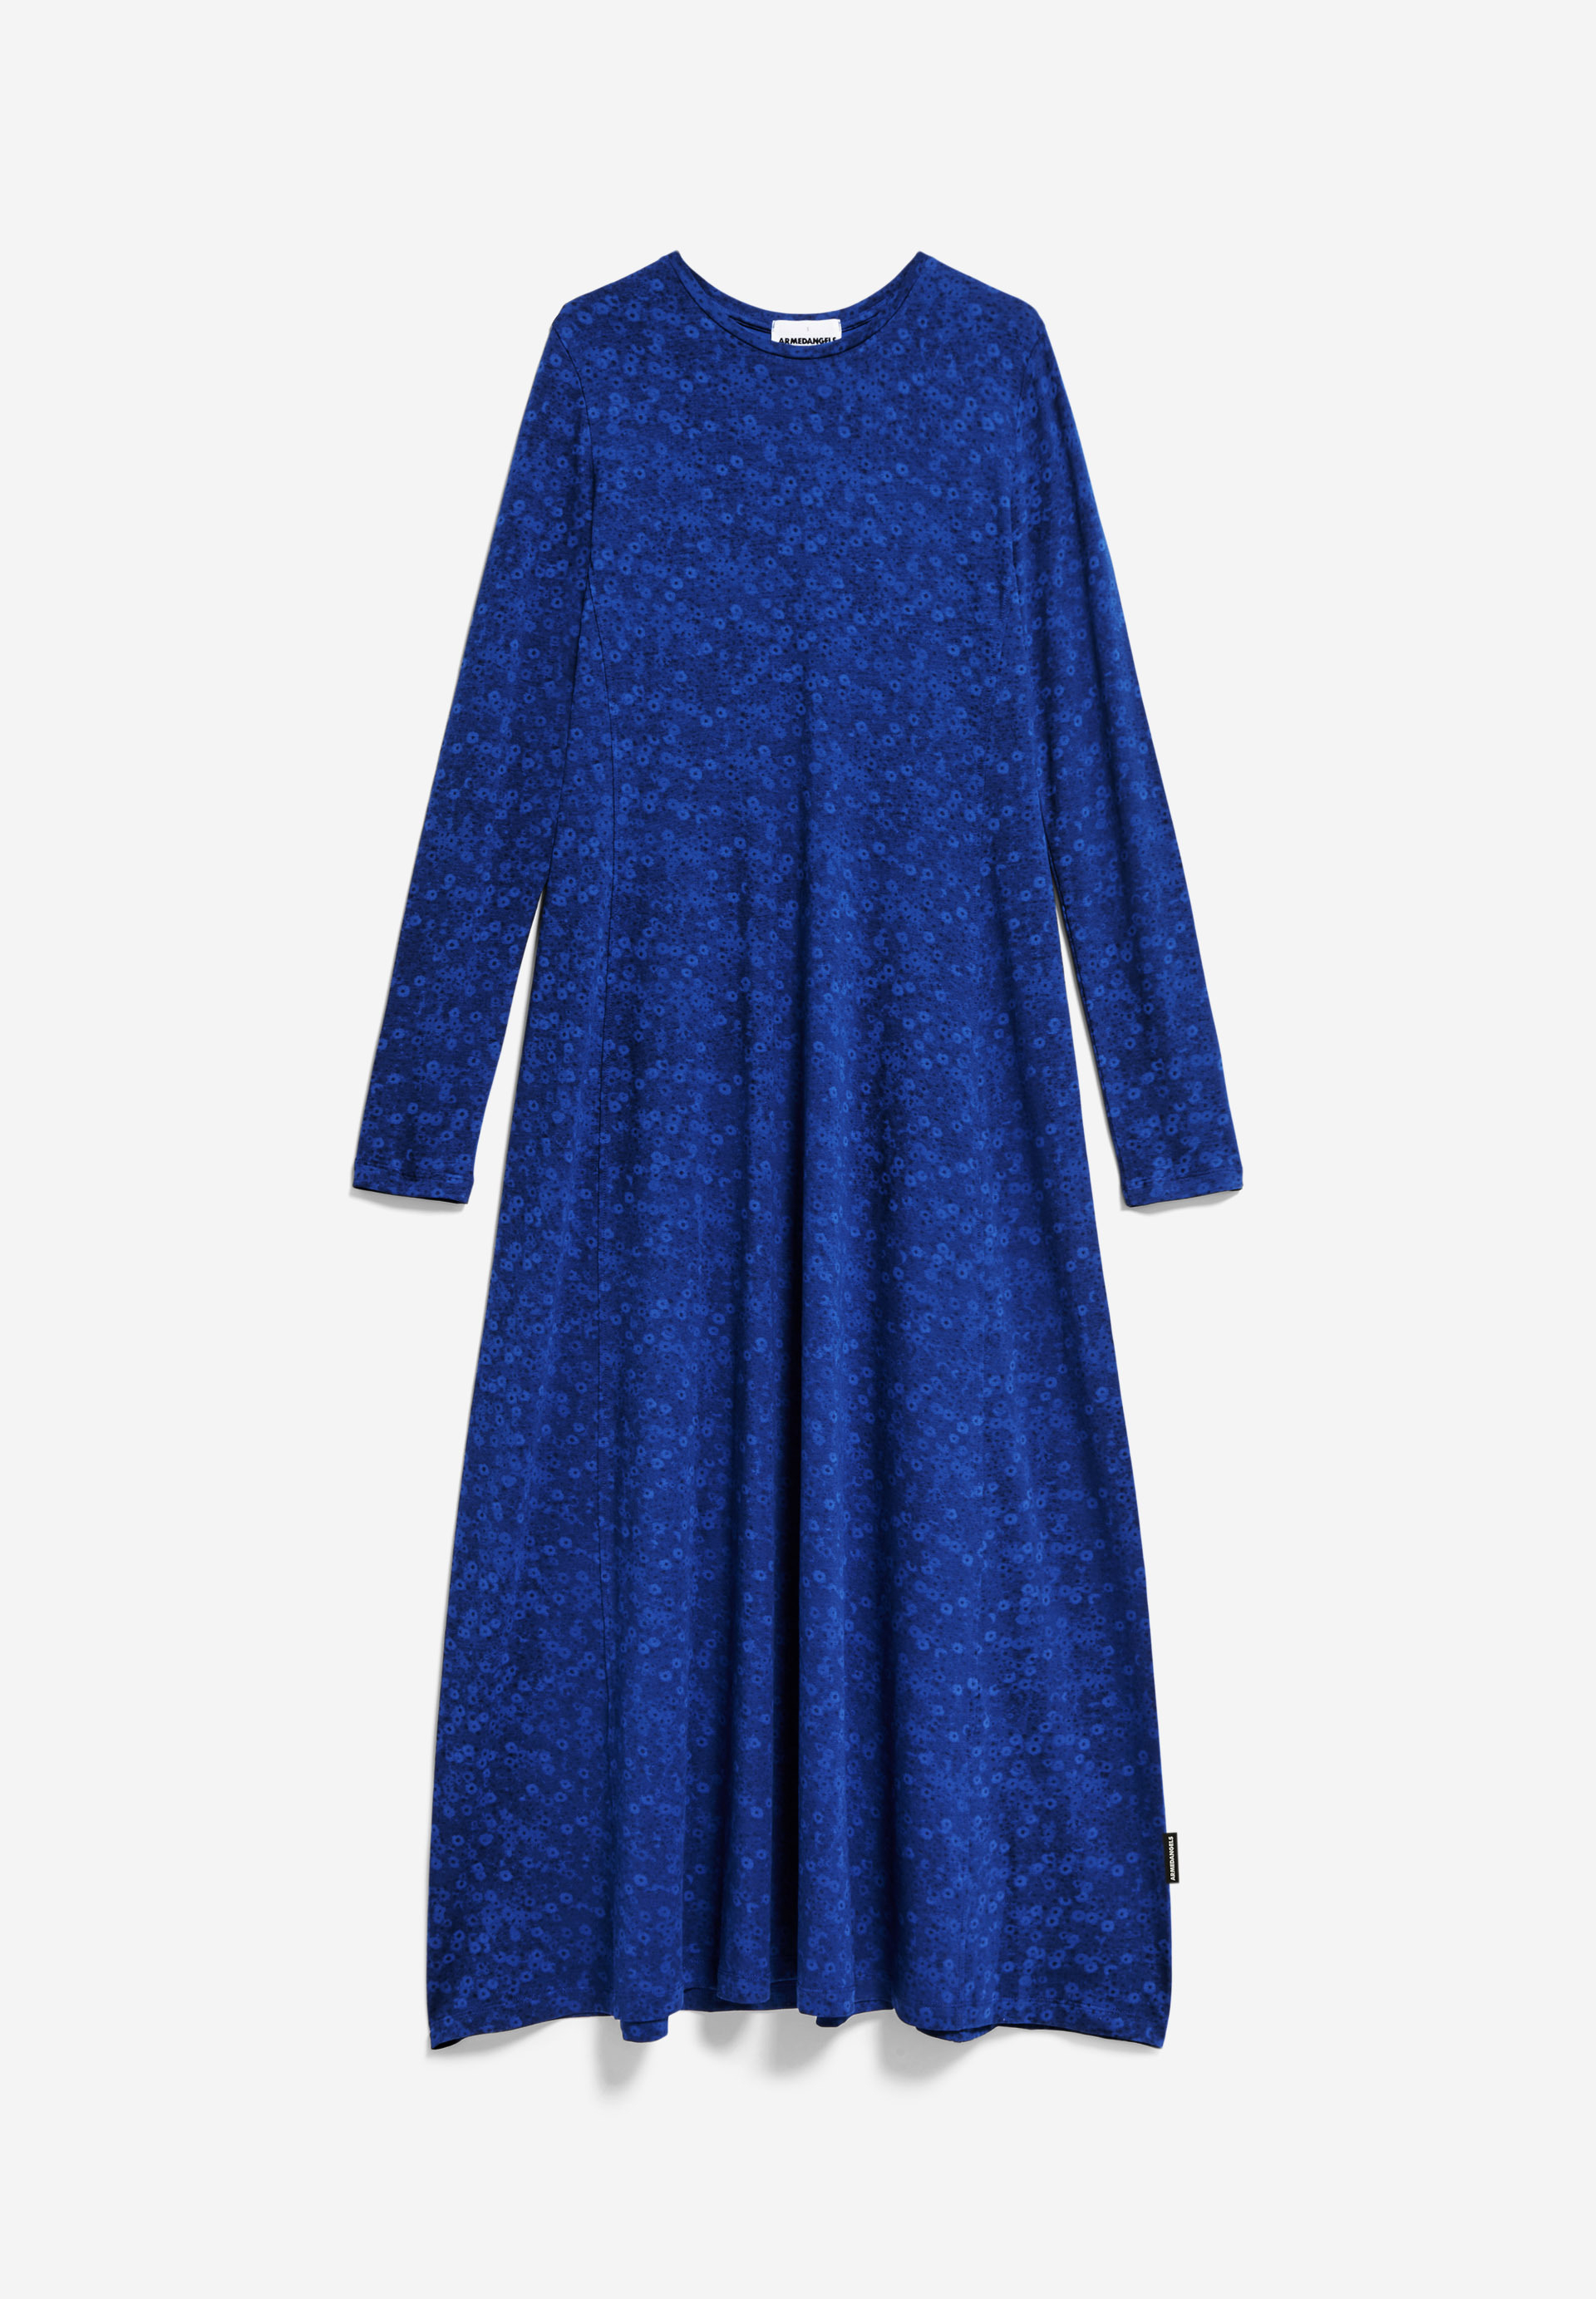 AZURAA MILLES FLEURS Jersey Dress Slim Fit made of Organic Cotton Mix